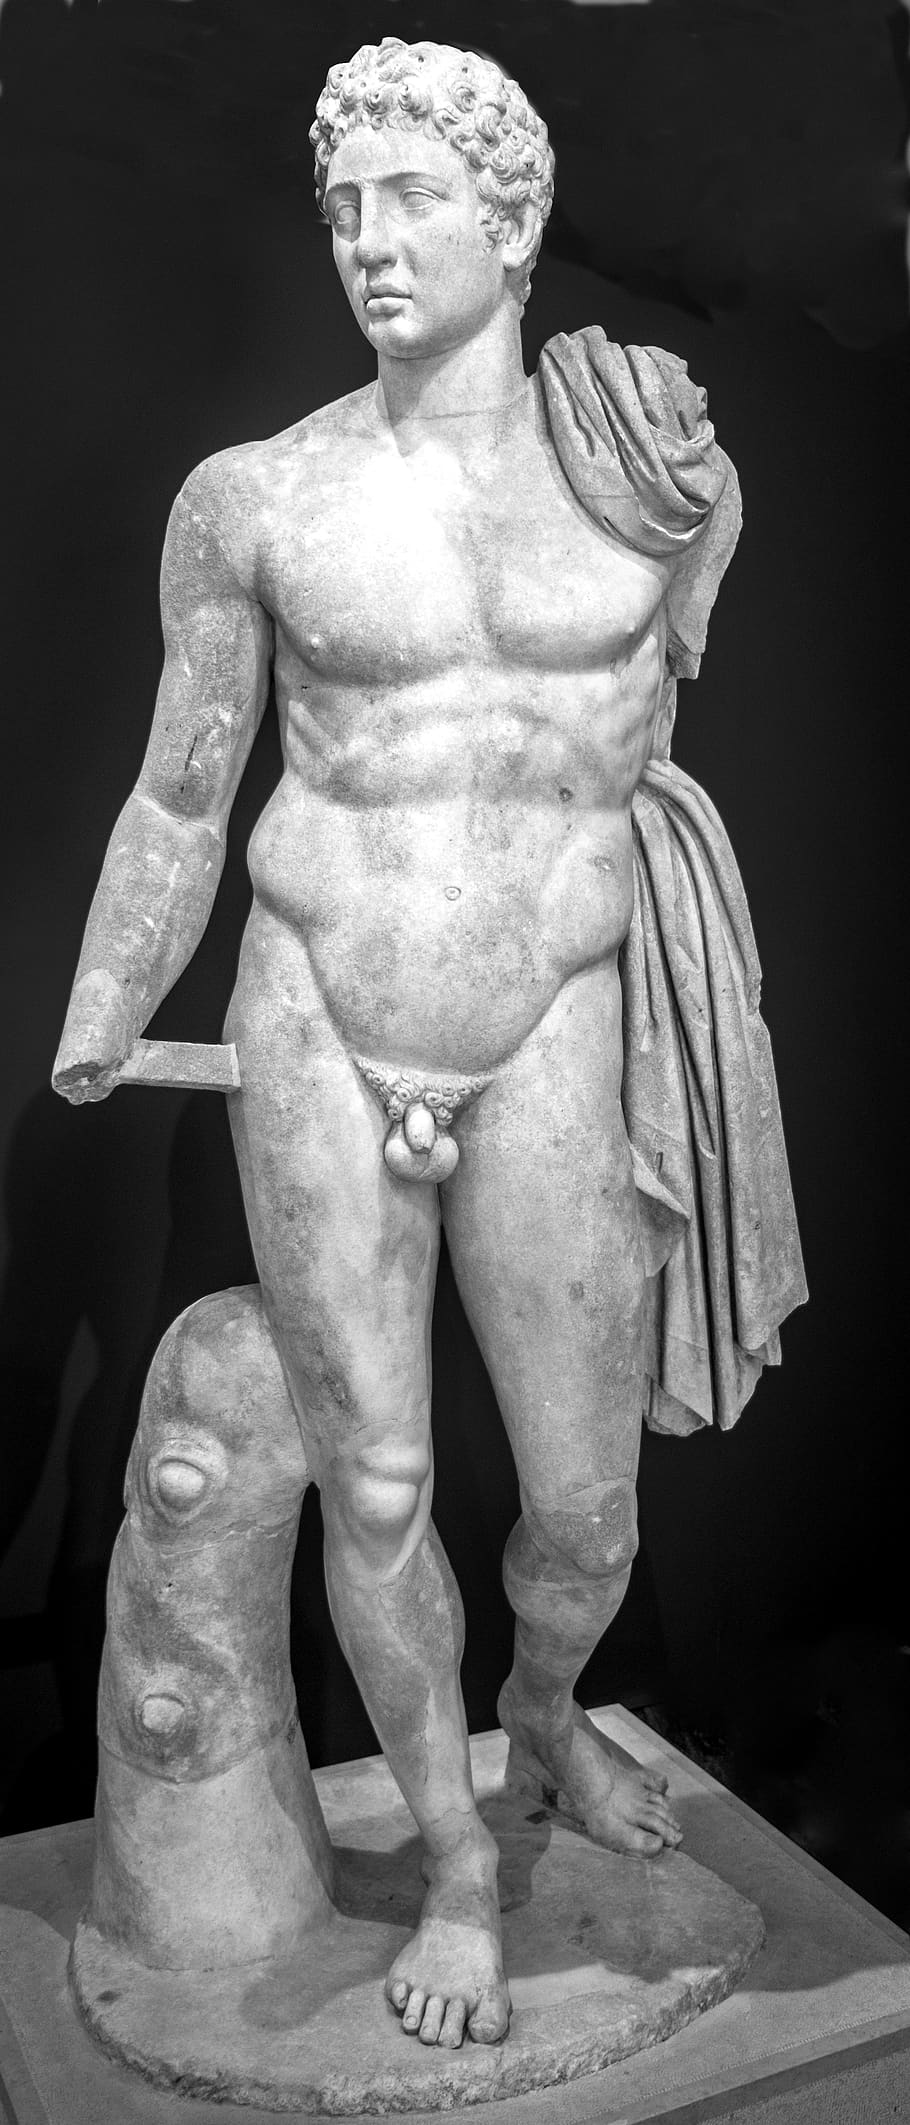 hermes, estátua, escultura, arte, corpo nu, museu, Grécia antiga, representação humana, arte e artesanato, representação